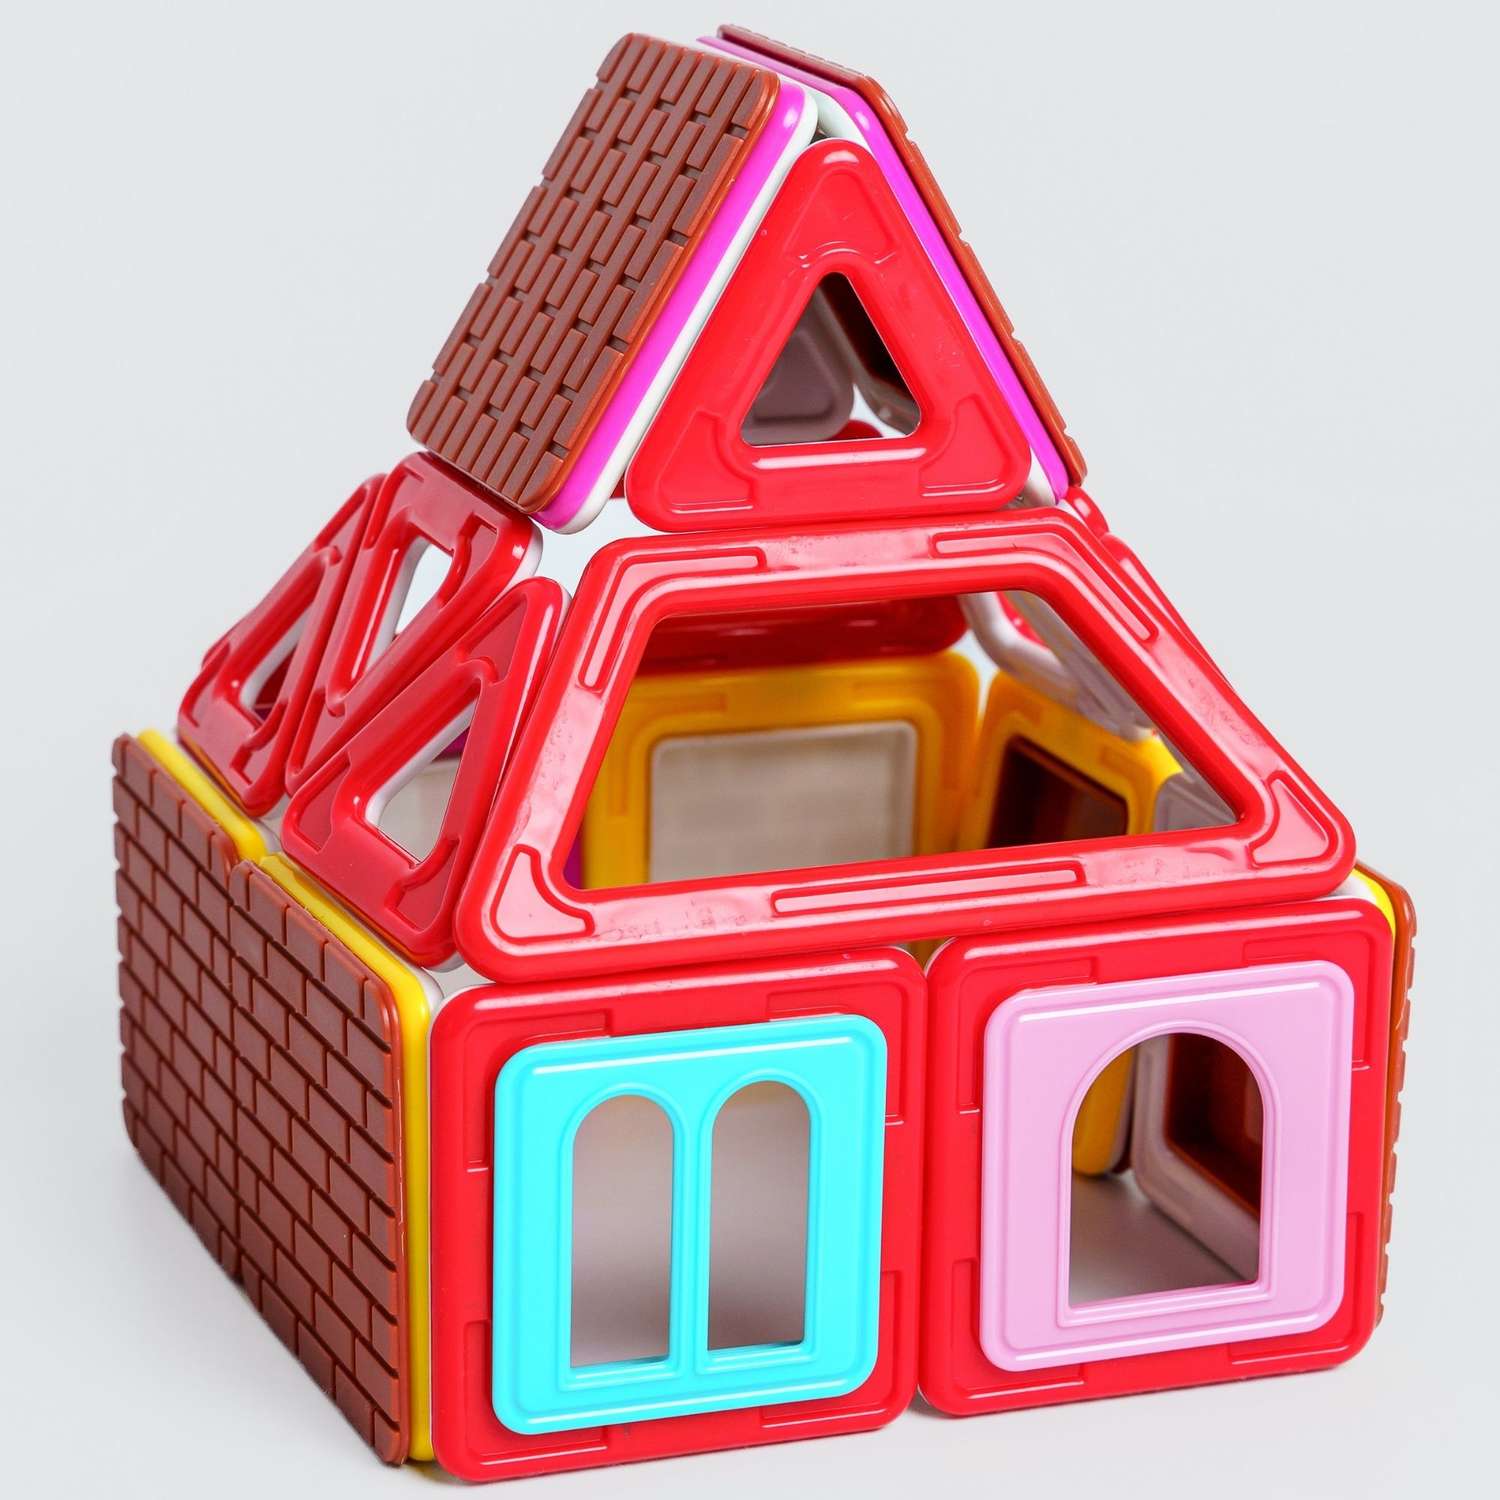 Конструктор Крибли Бу магнитный пластиковый сборный/детская развивающая игрушка с крупными деталями 46 элементов - фото 2